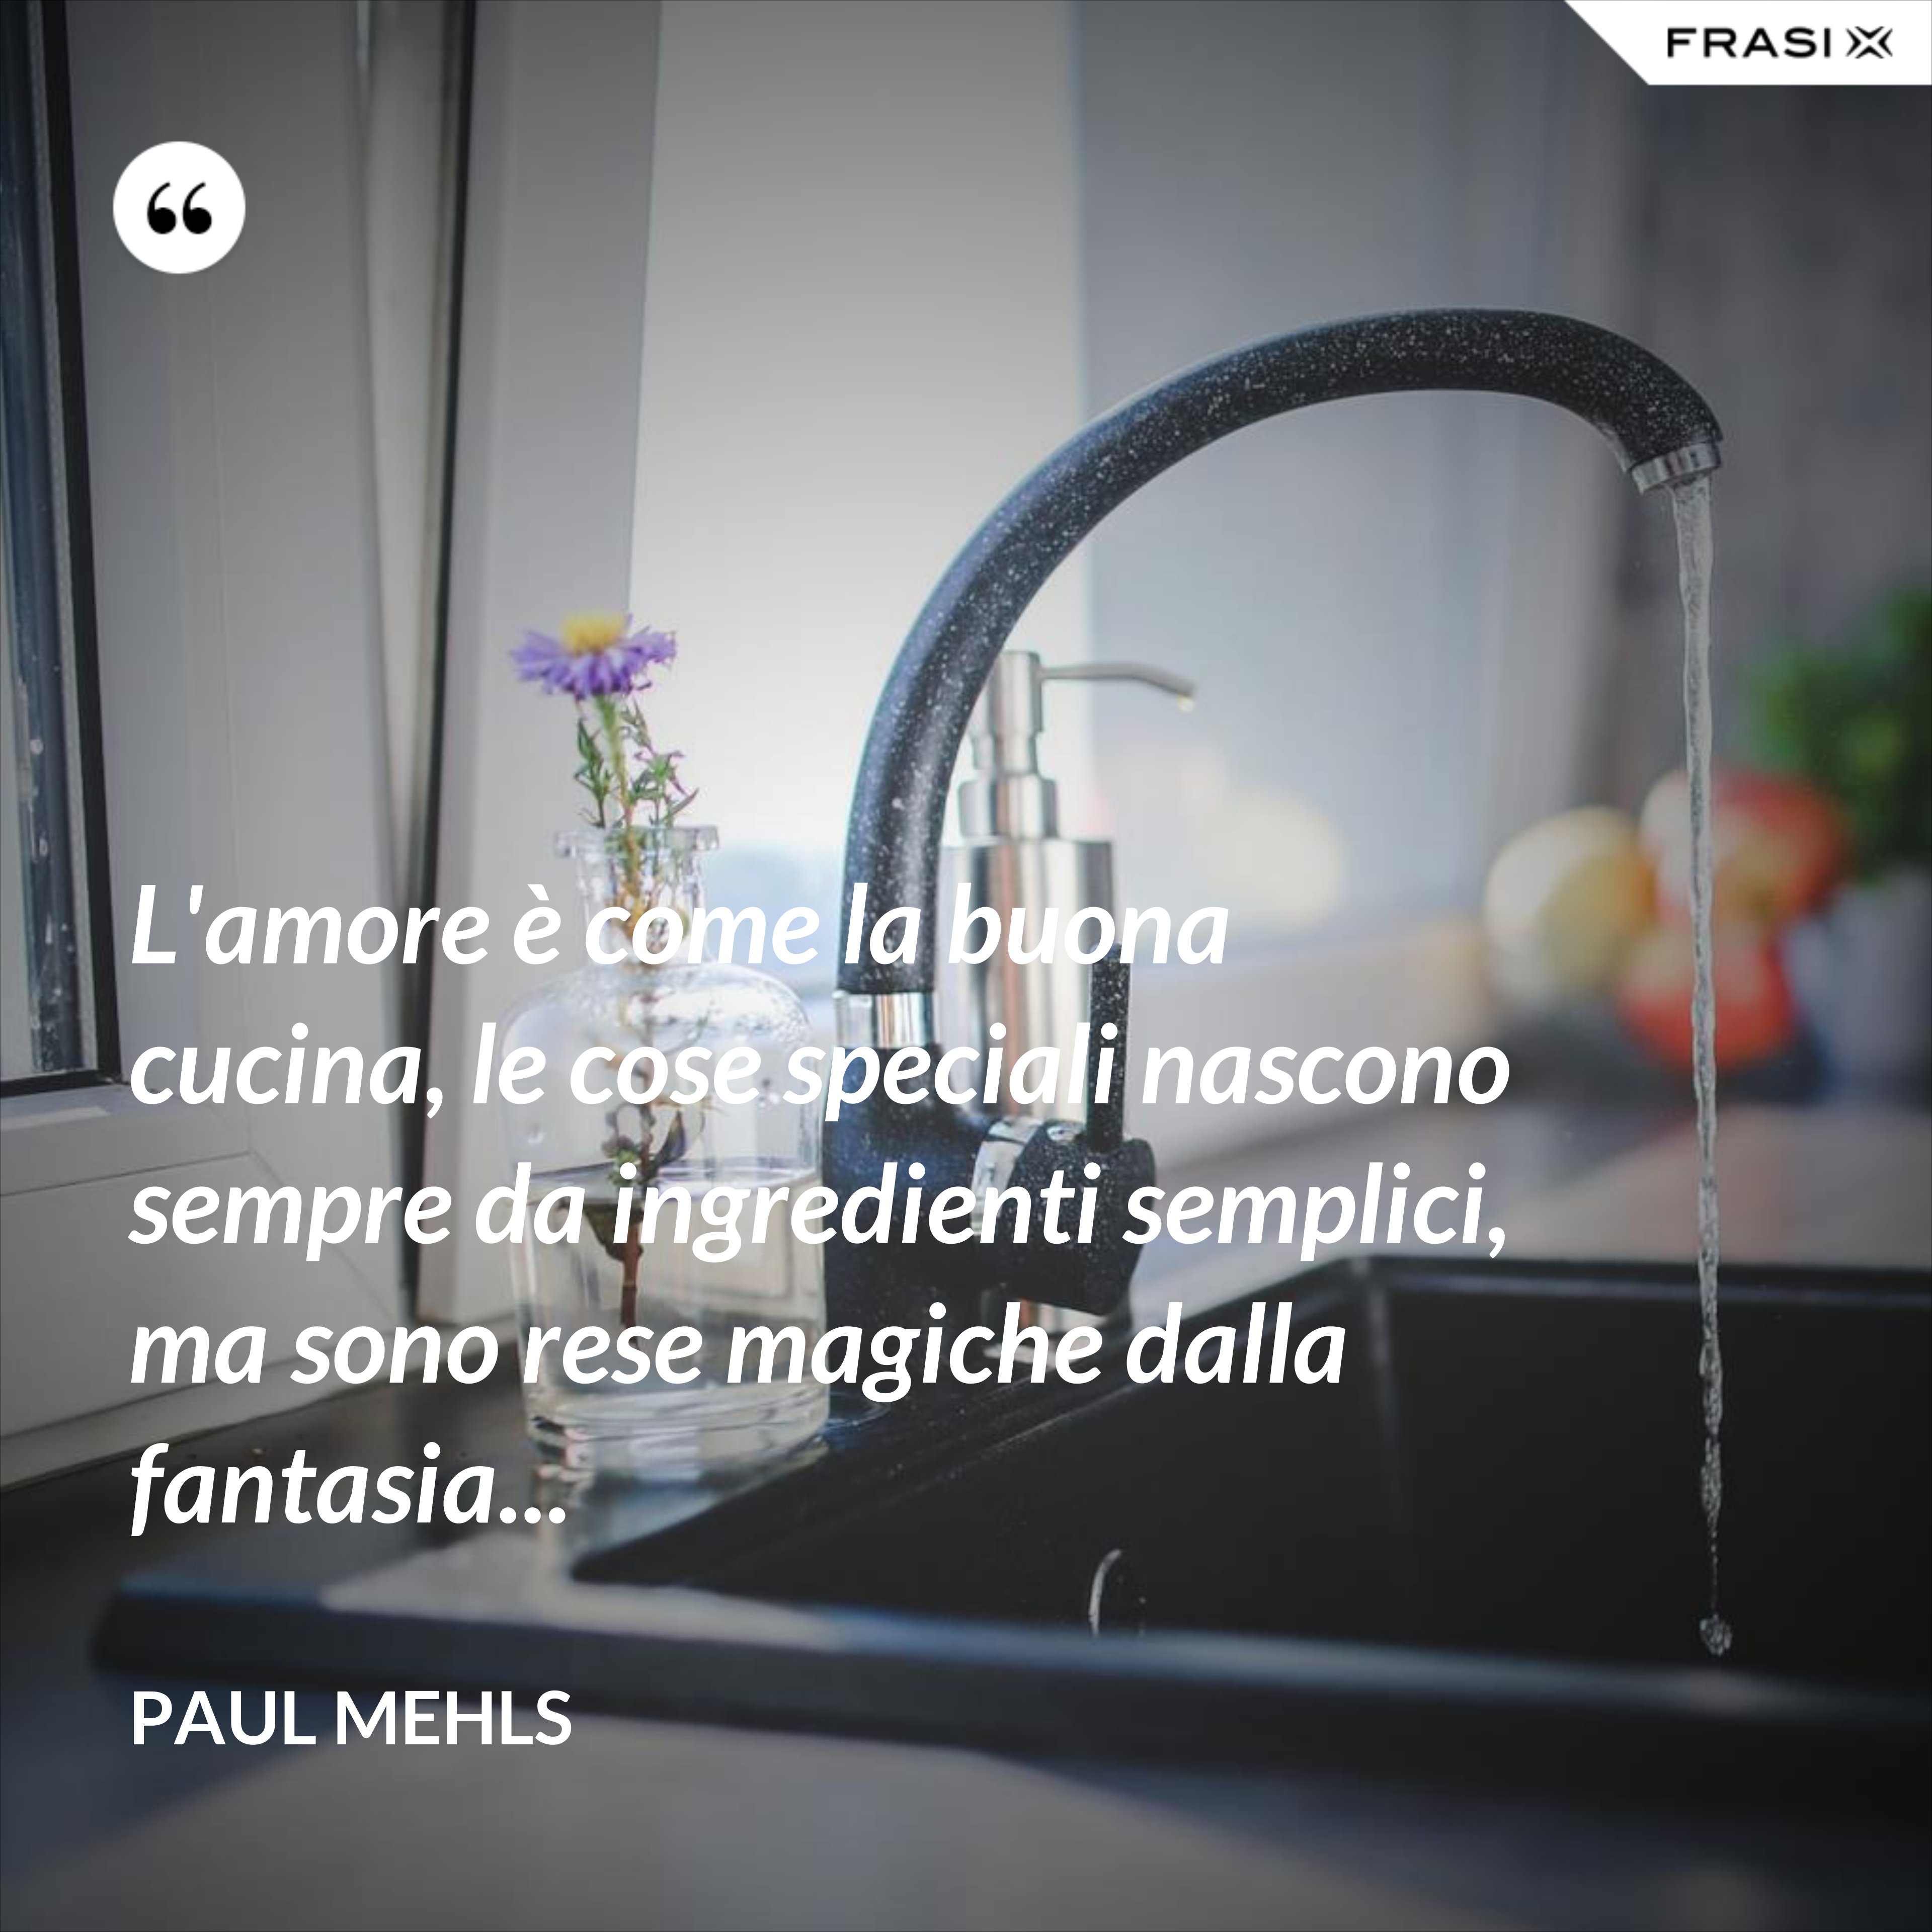 L'amore è come la buona cucina, le cose speciali nascono sempre da ingredienti semplici, ma sono rese magiche dalla fantasia... - Paul Mehls